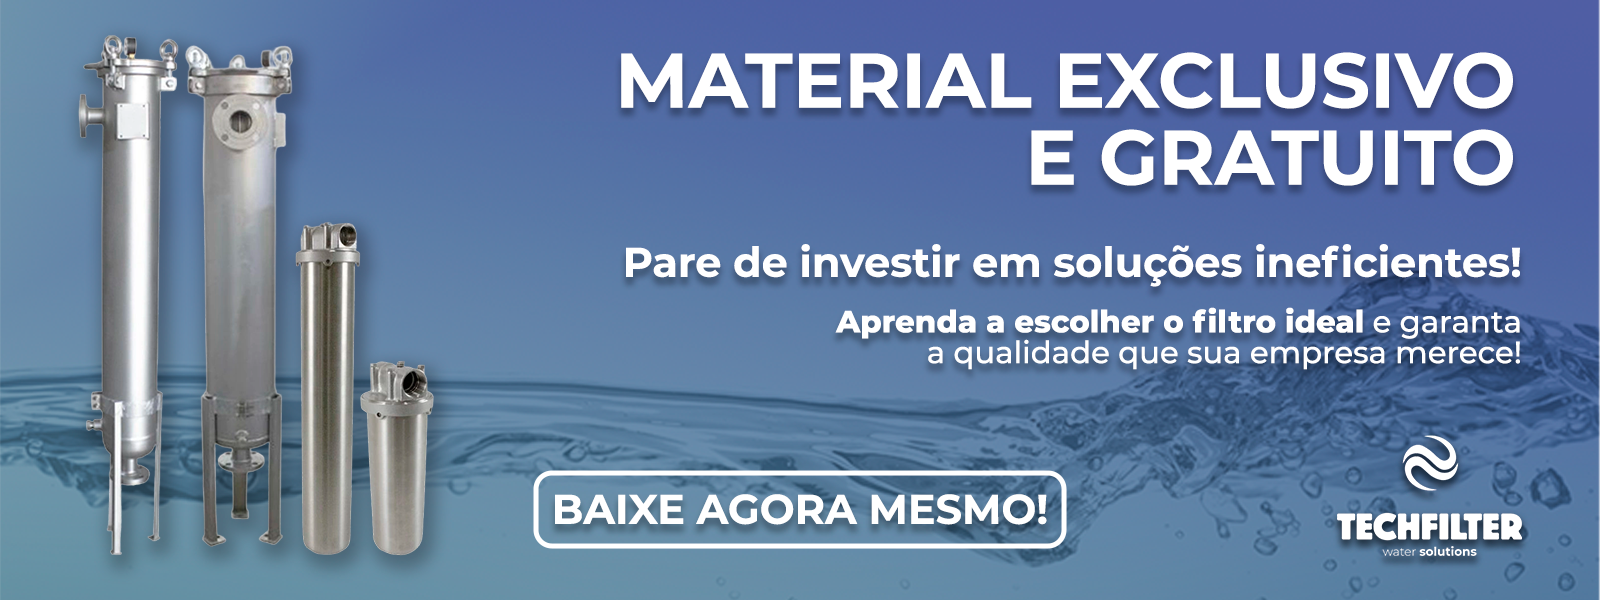 Banner Material Rico Gratuito: Pare de investir em soluções insuficientes! Aprenda a escolher a filtro ideal e garanta a qualidade que a sua empresa merece!